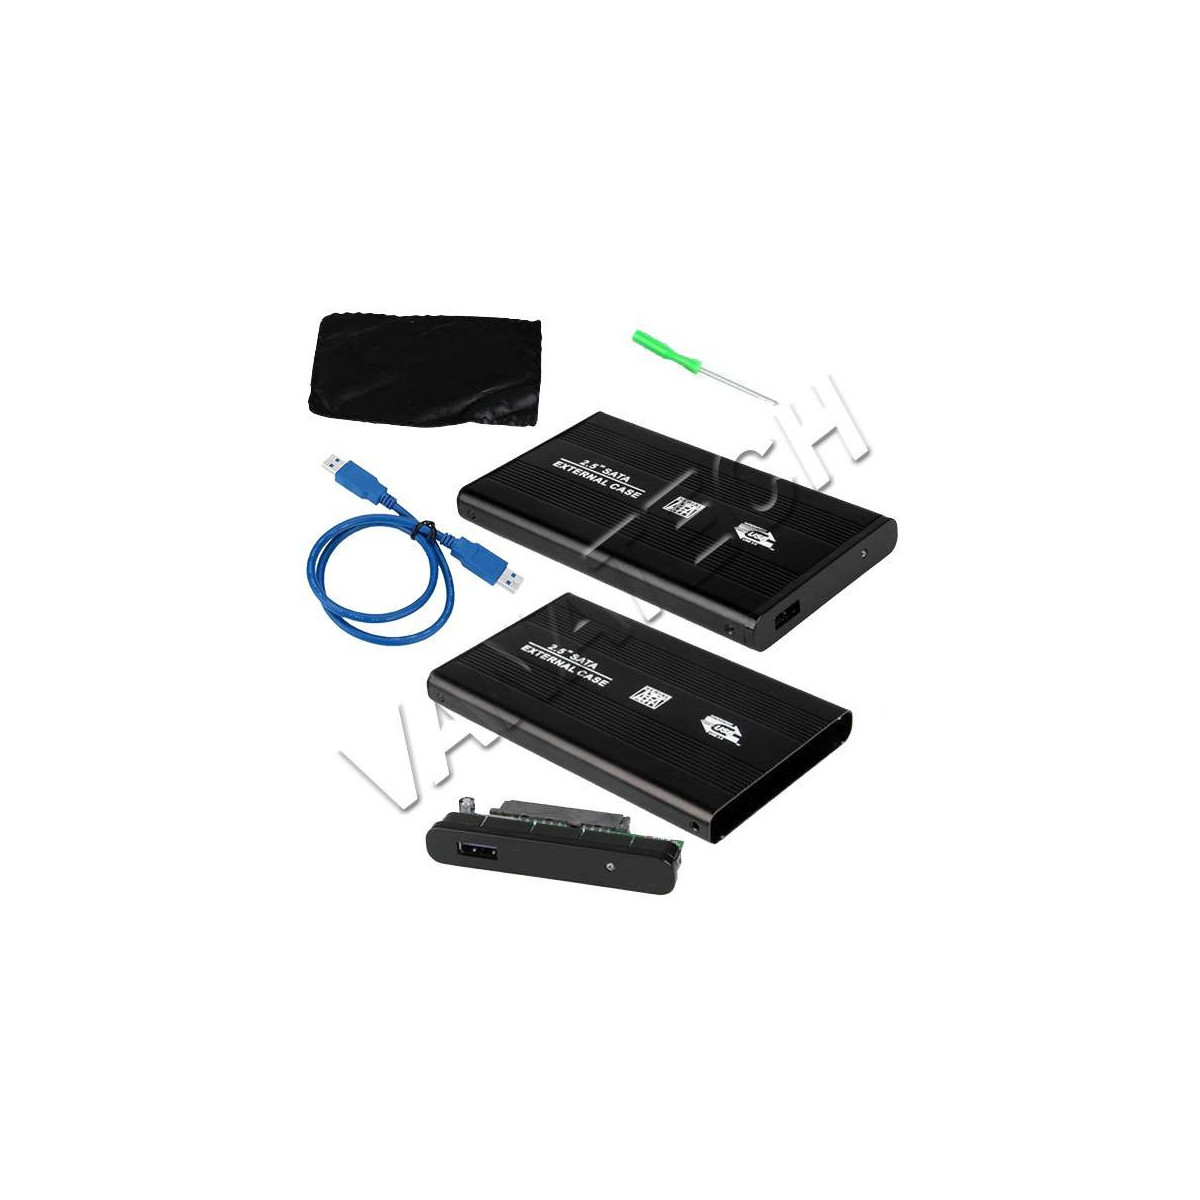 BOX PER HARD DISK CASE SLIM ESTERNO 2,5 SATA USB 2,5 CAVO USB 2.0